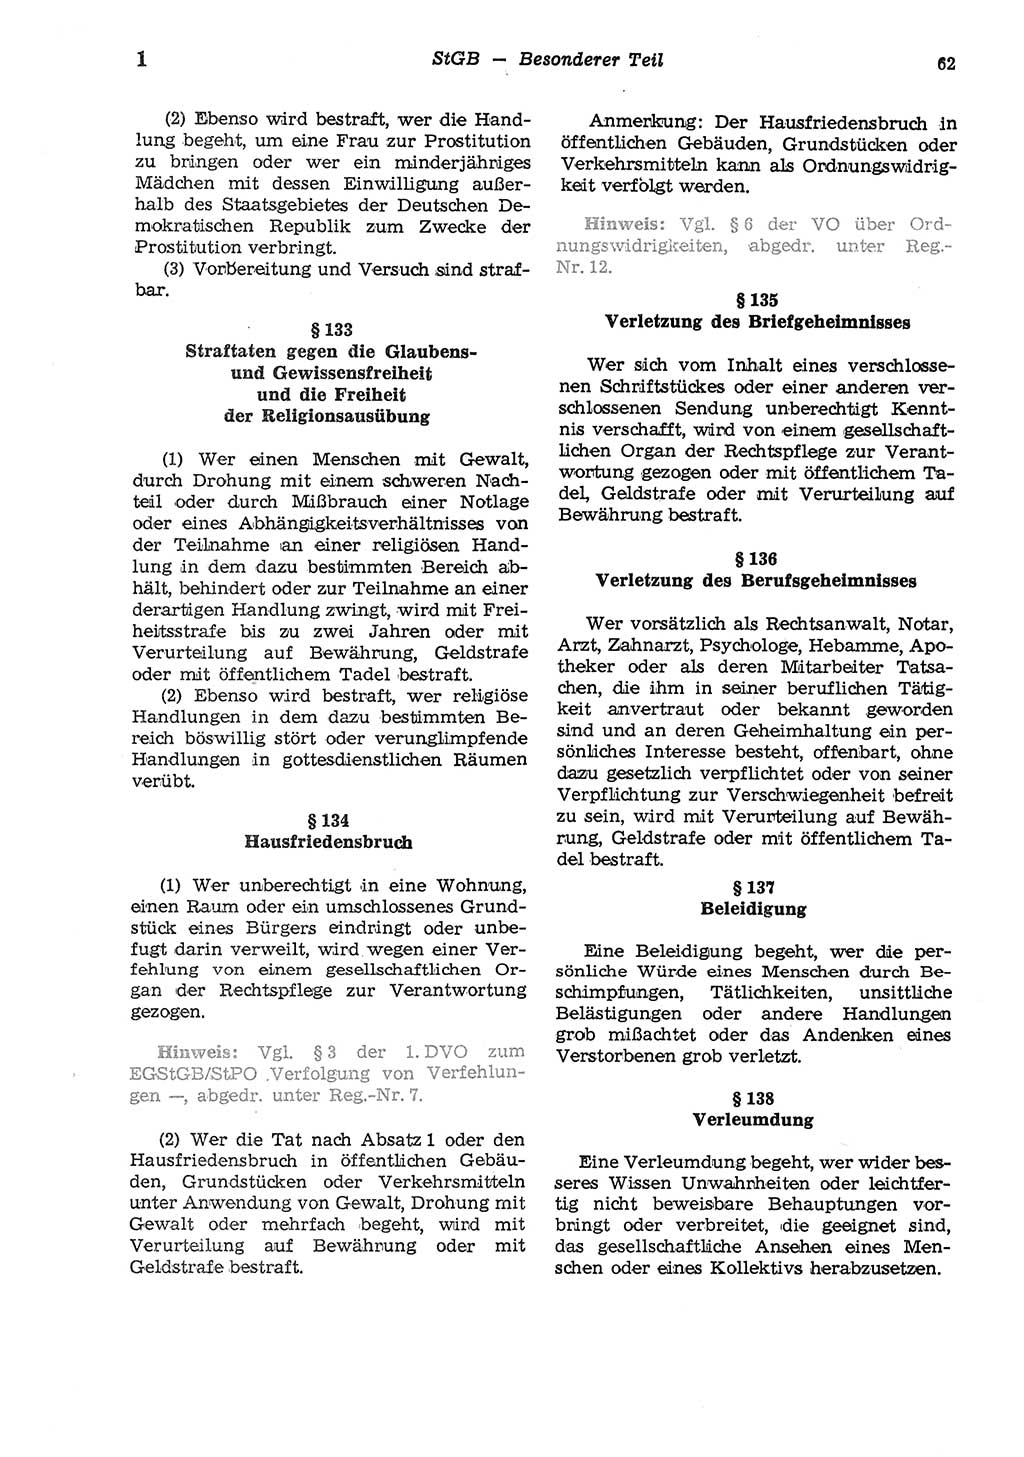 Strafgesetzbuch (StGB) der Deutschen Demokratischen Republik (DDR) und angrenzende Gesetze und Bestimmungen 1975, Seite 62 (StGB DDR Ges. Best. 1975, S. 62)